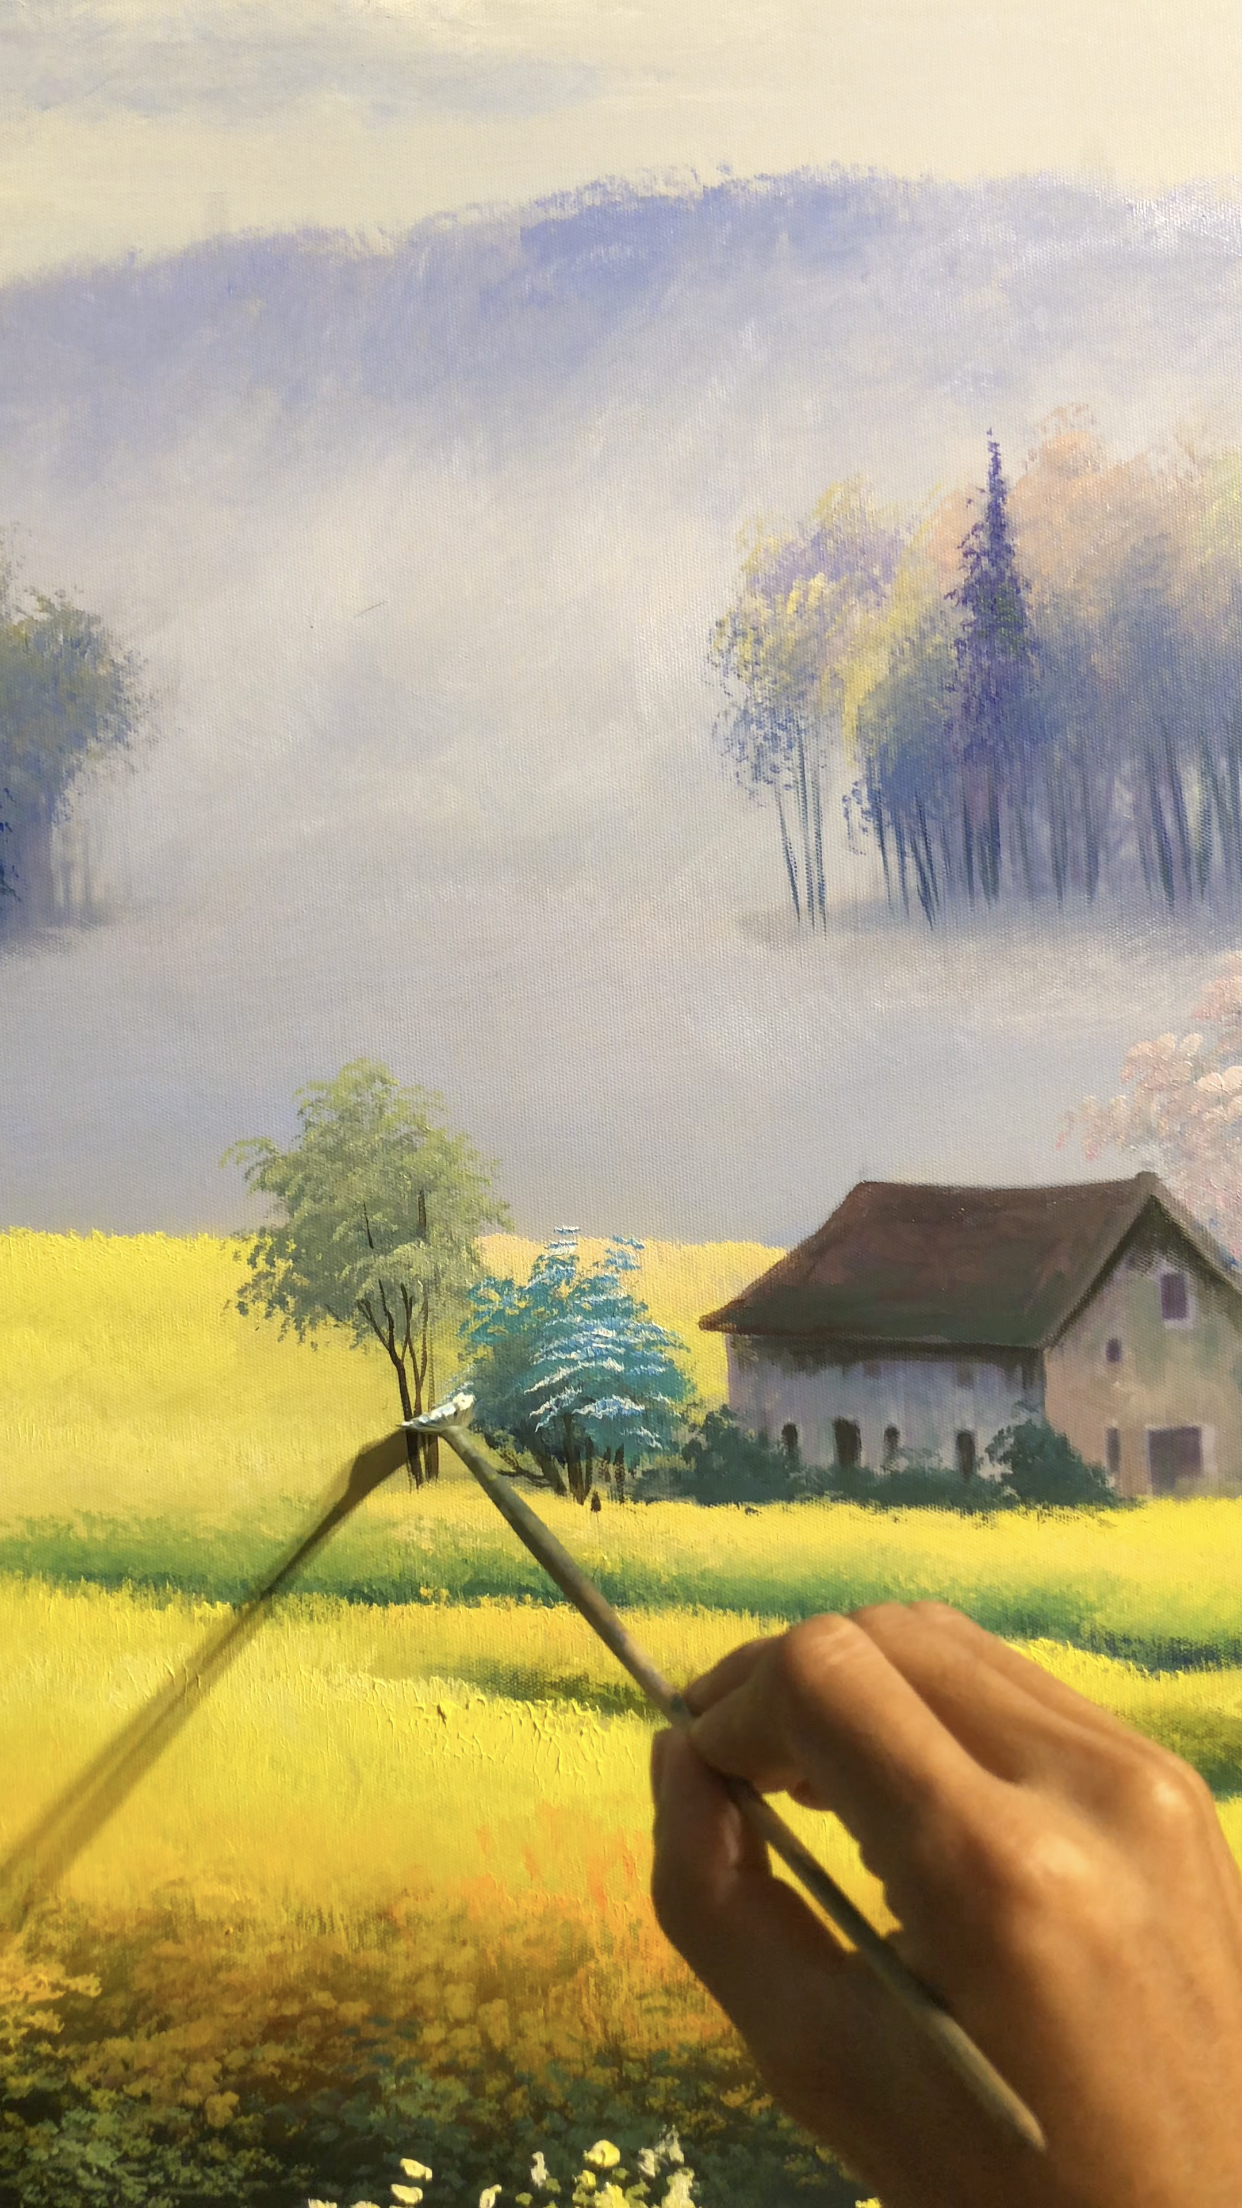 Ngắm cánh đồng hoa vàng rực rỡ qua bức tranh sơn dầu phong cảnh này nhé